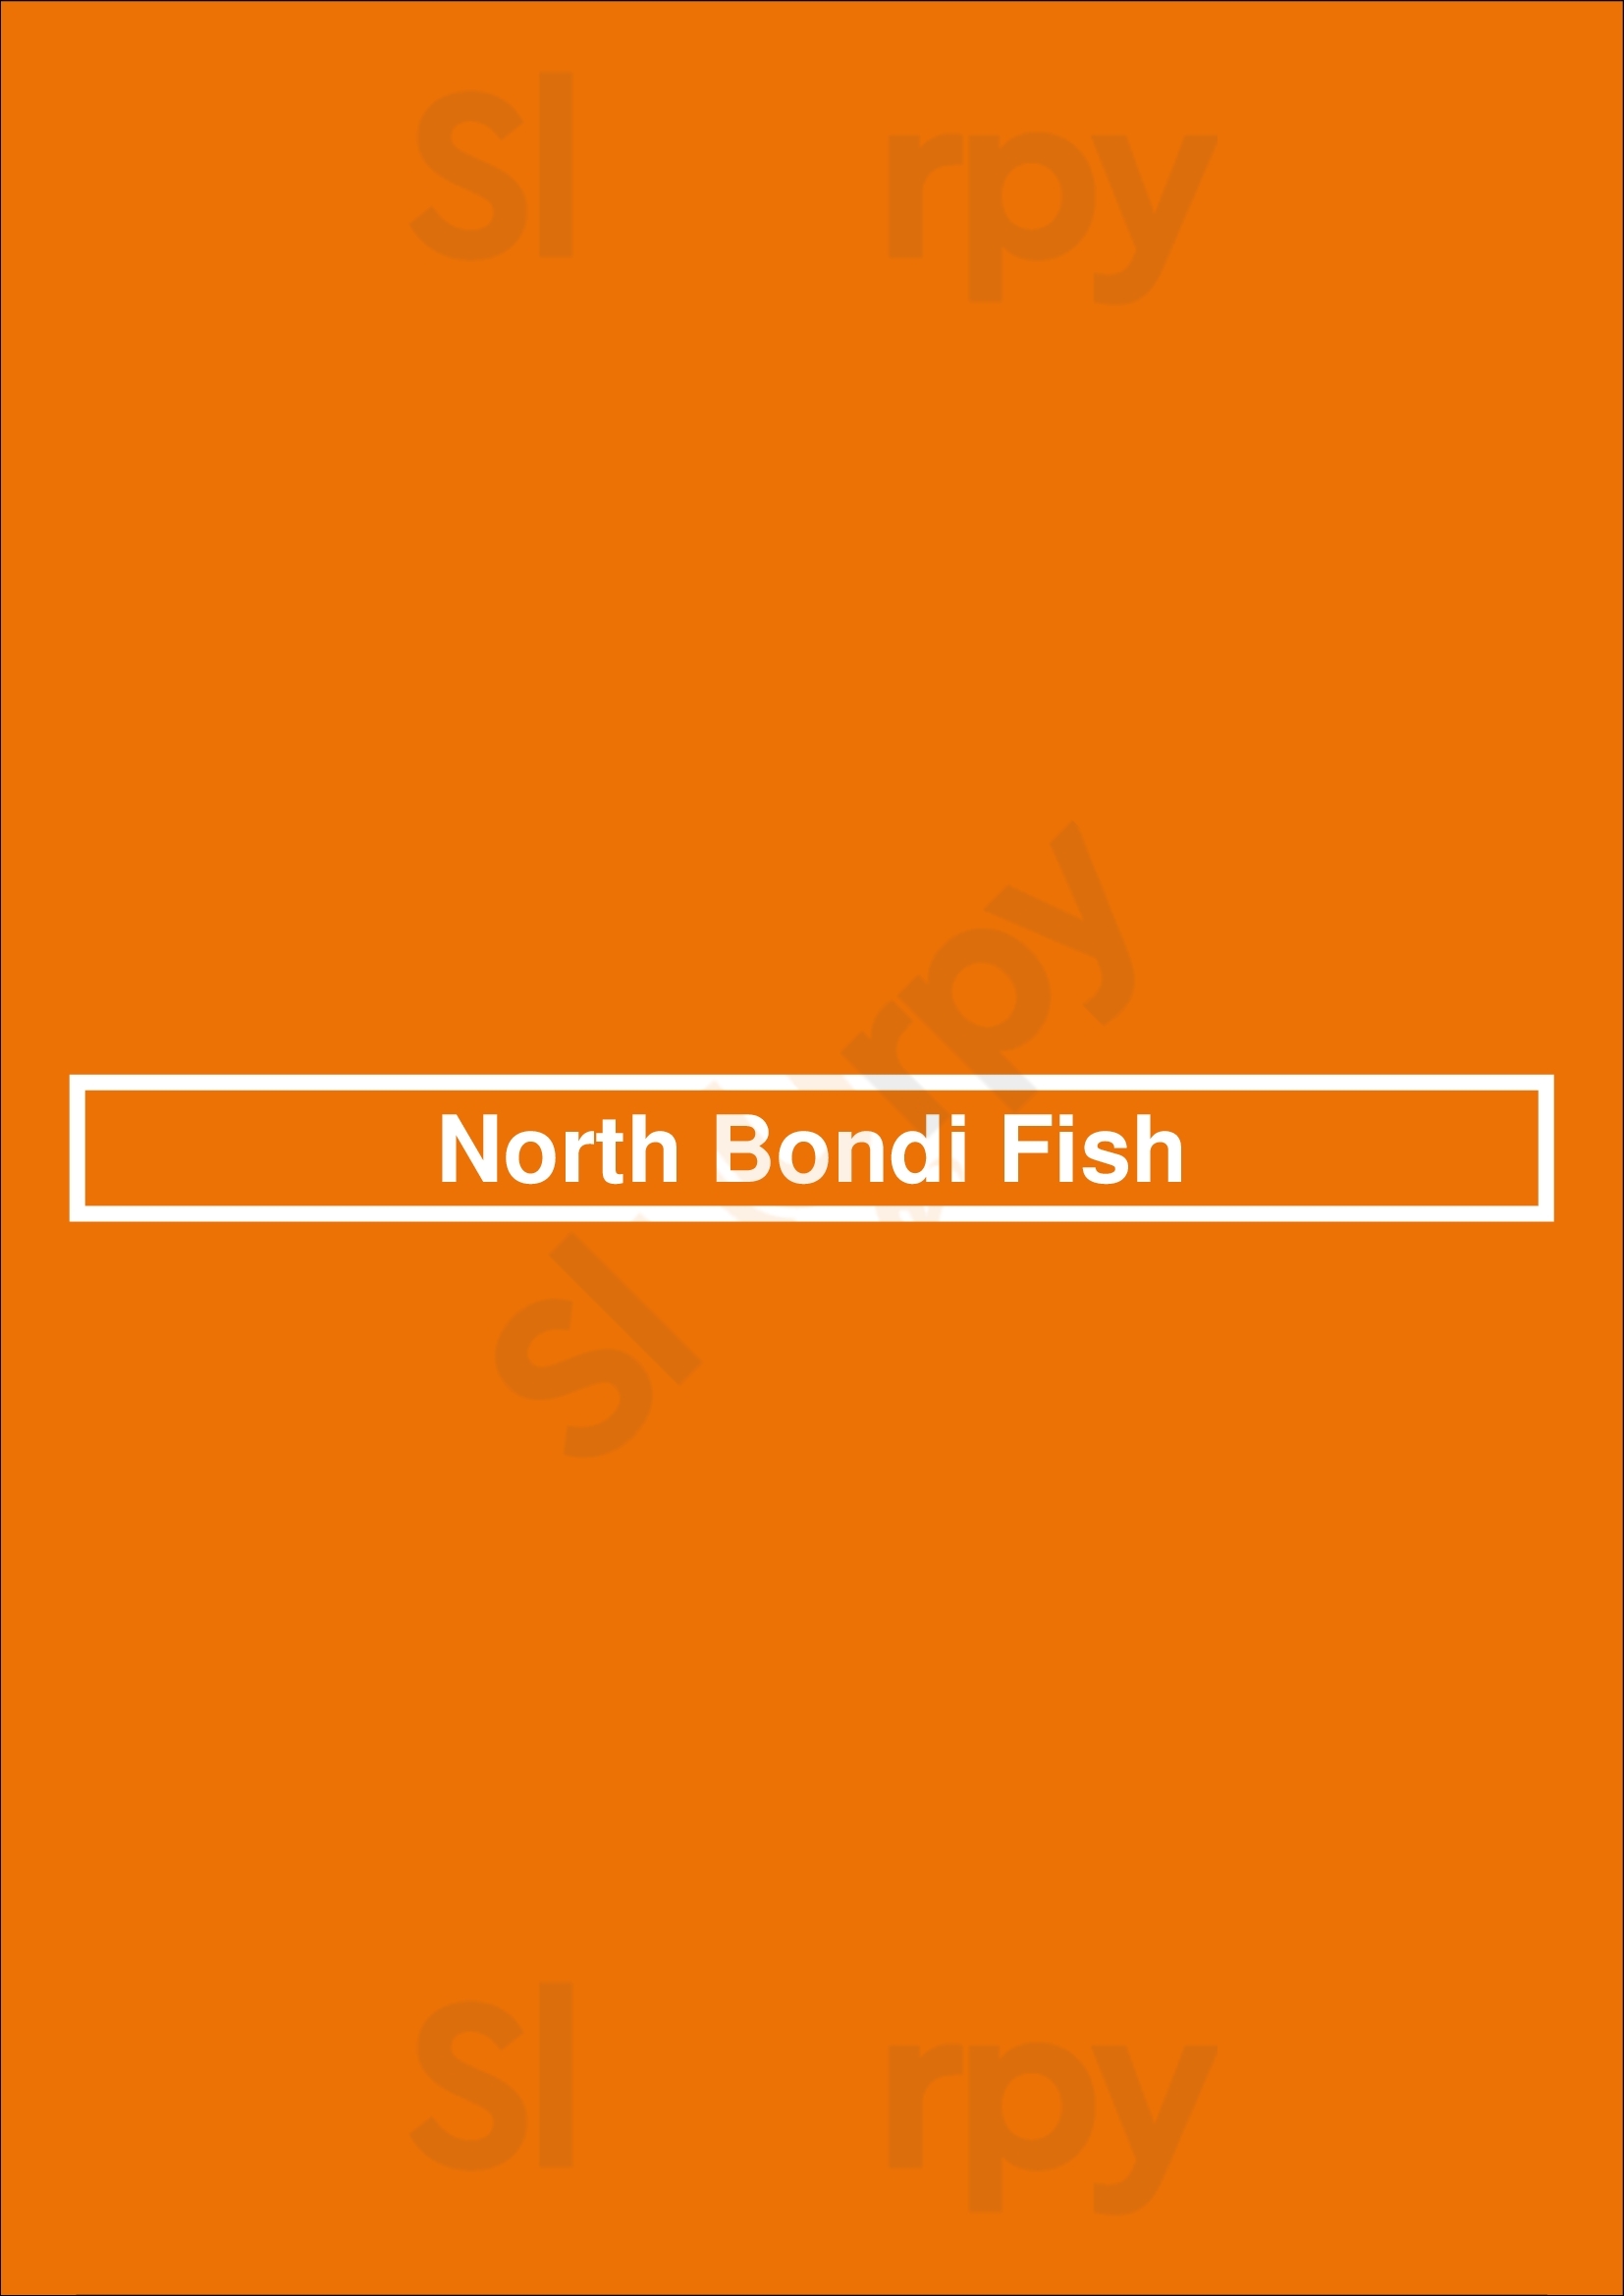 North Bondi Fish Bondi Menu - 1